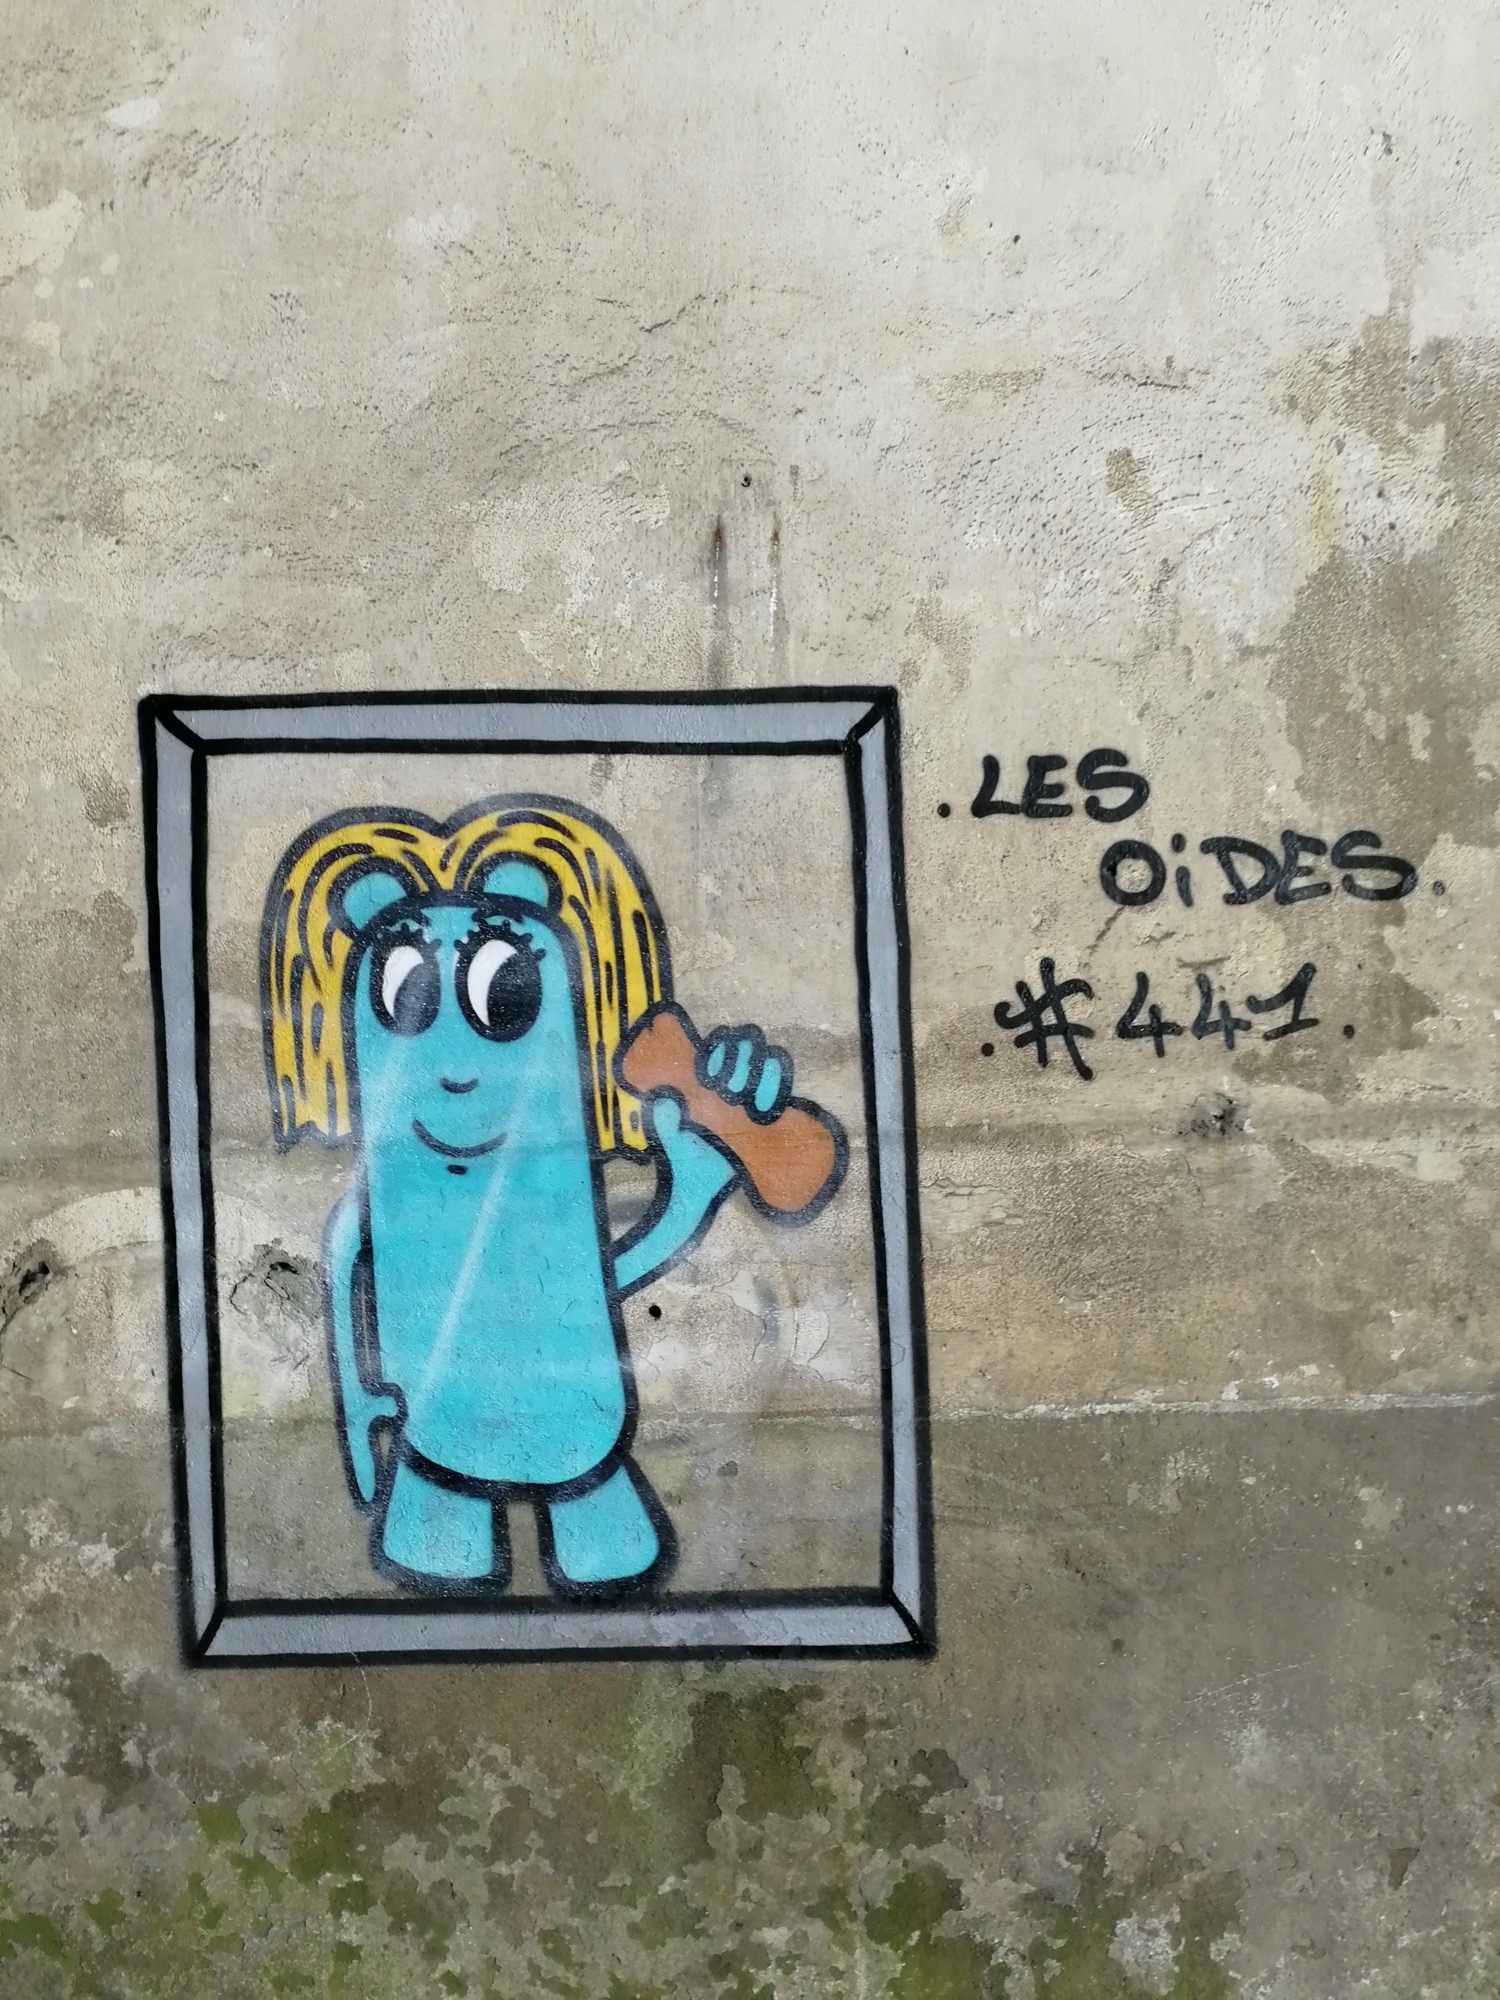 Graffiti 1324 Les oides #441 de Les Oides capturé par Rabot à Saint-Nazaire France